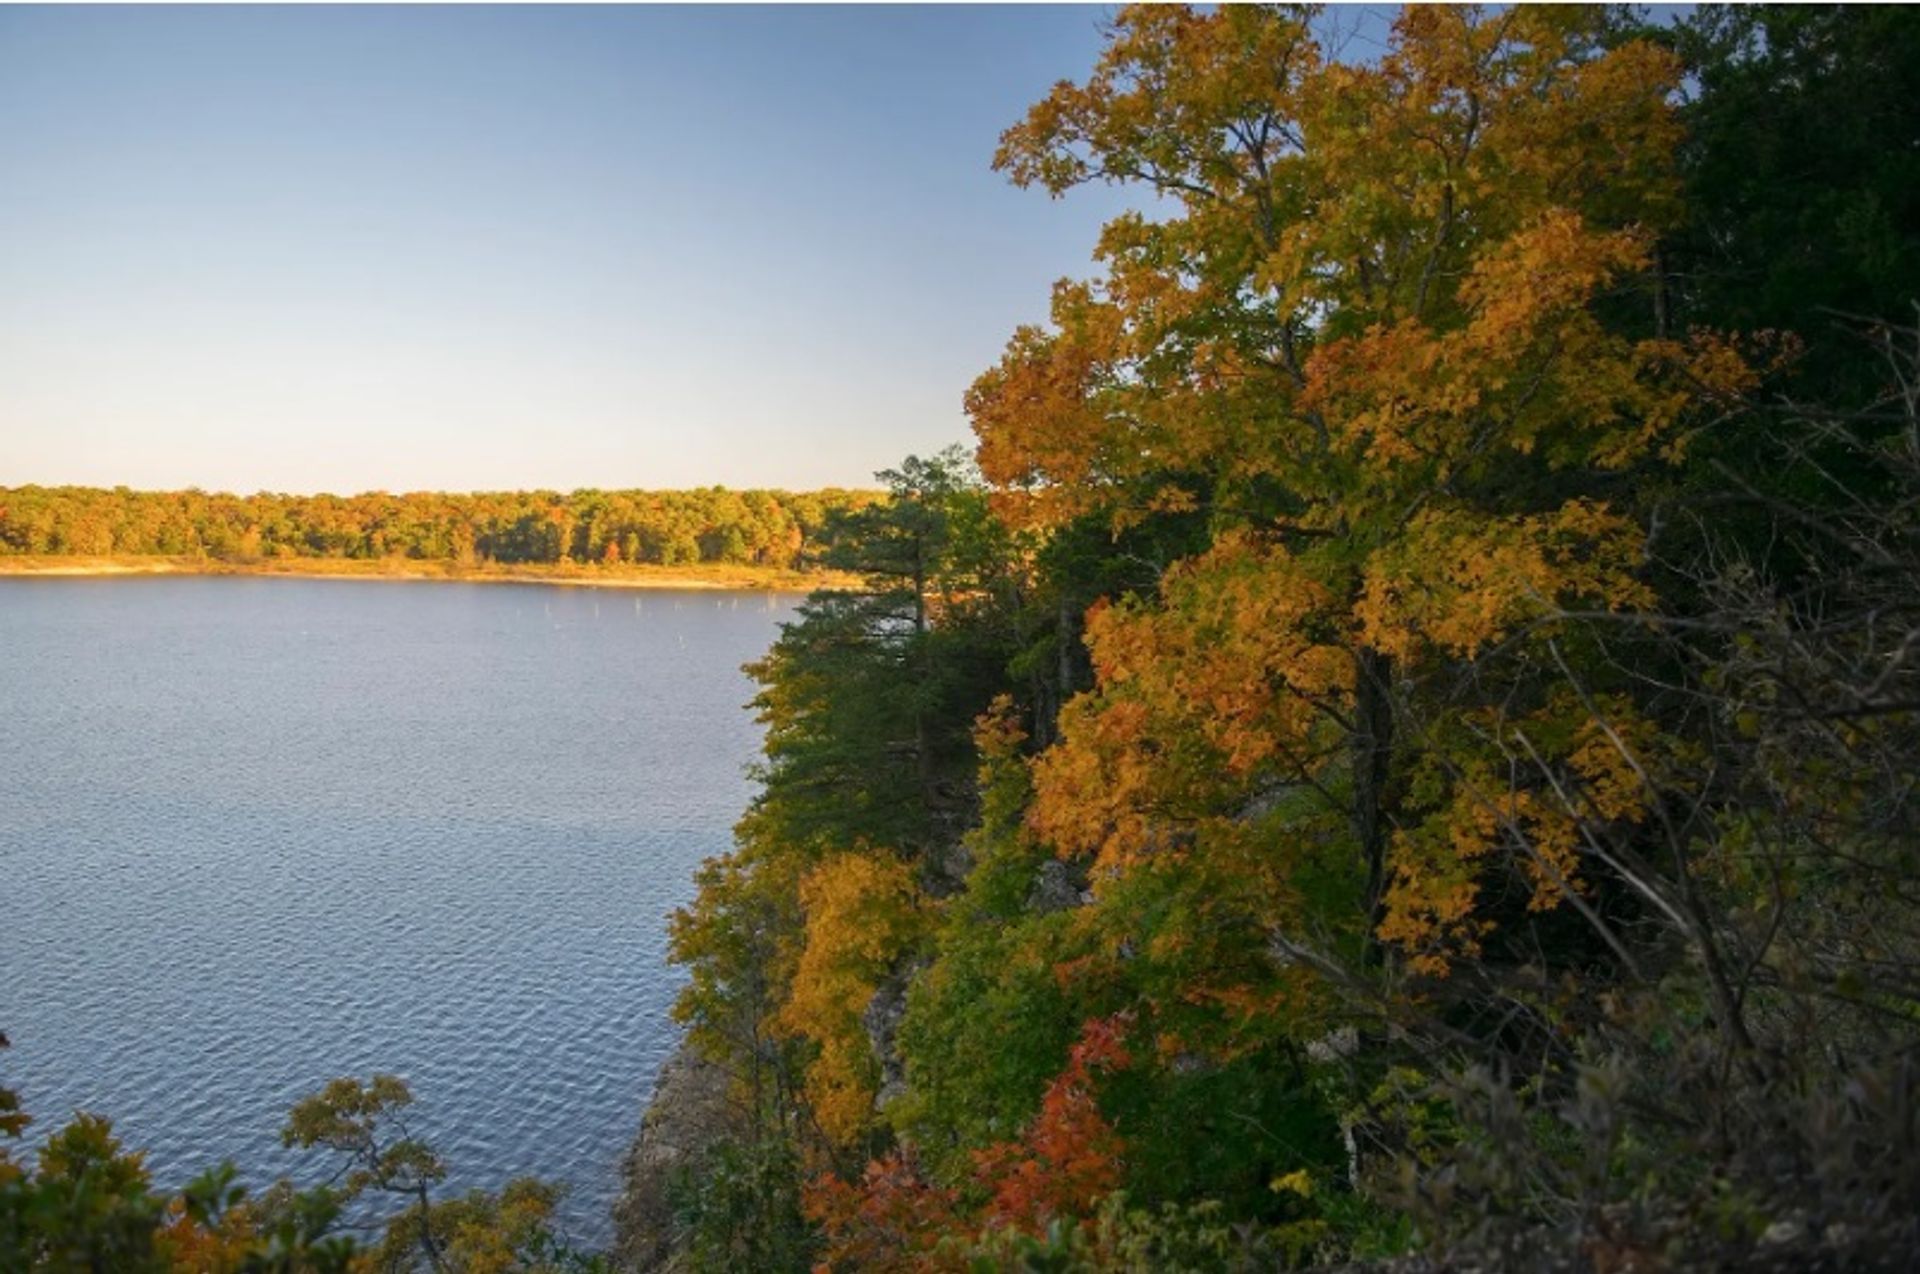 מבט אווירי על פארק אגם טרומן

תמונה מאת Semipaw, באמצעות ויקימדיה קומונס